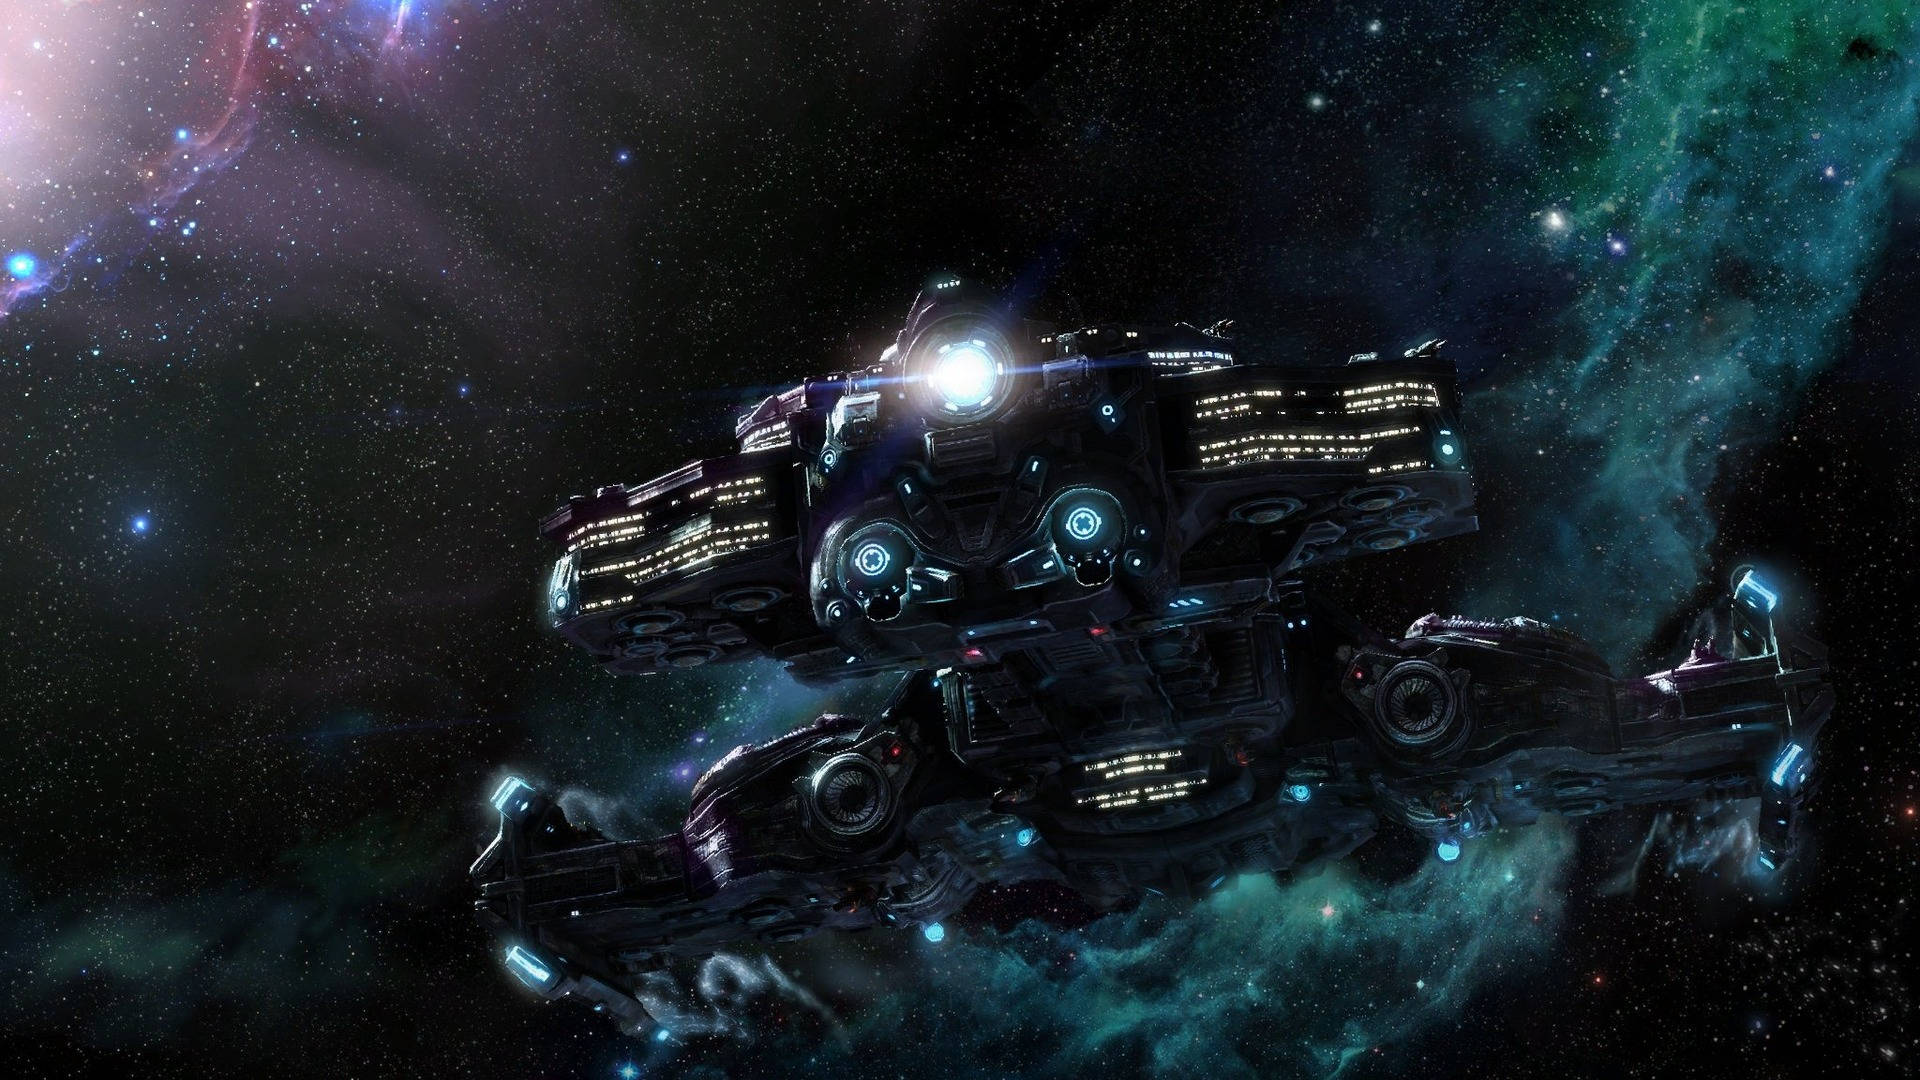 Starcraft 2 Galaxy Spaceships Wallpaper